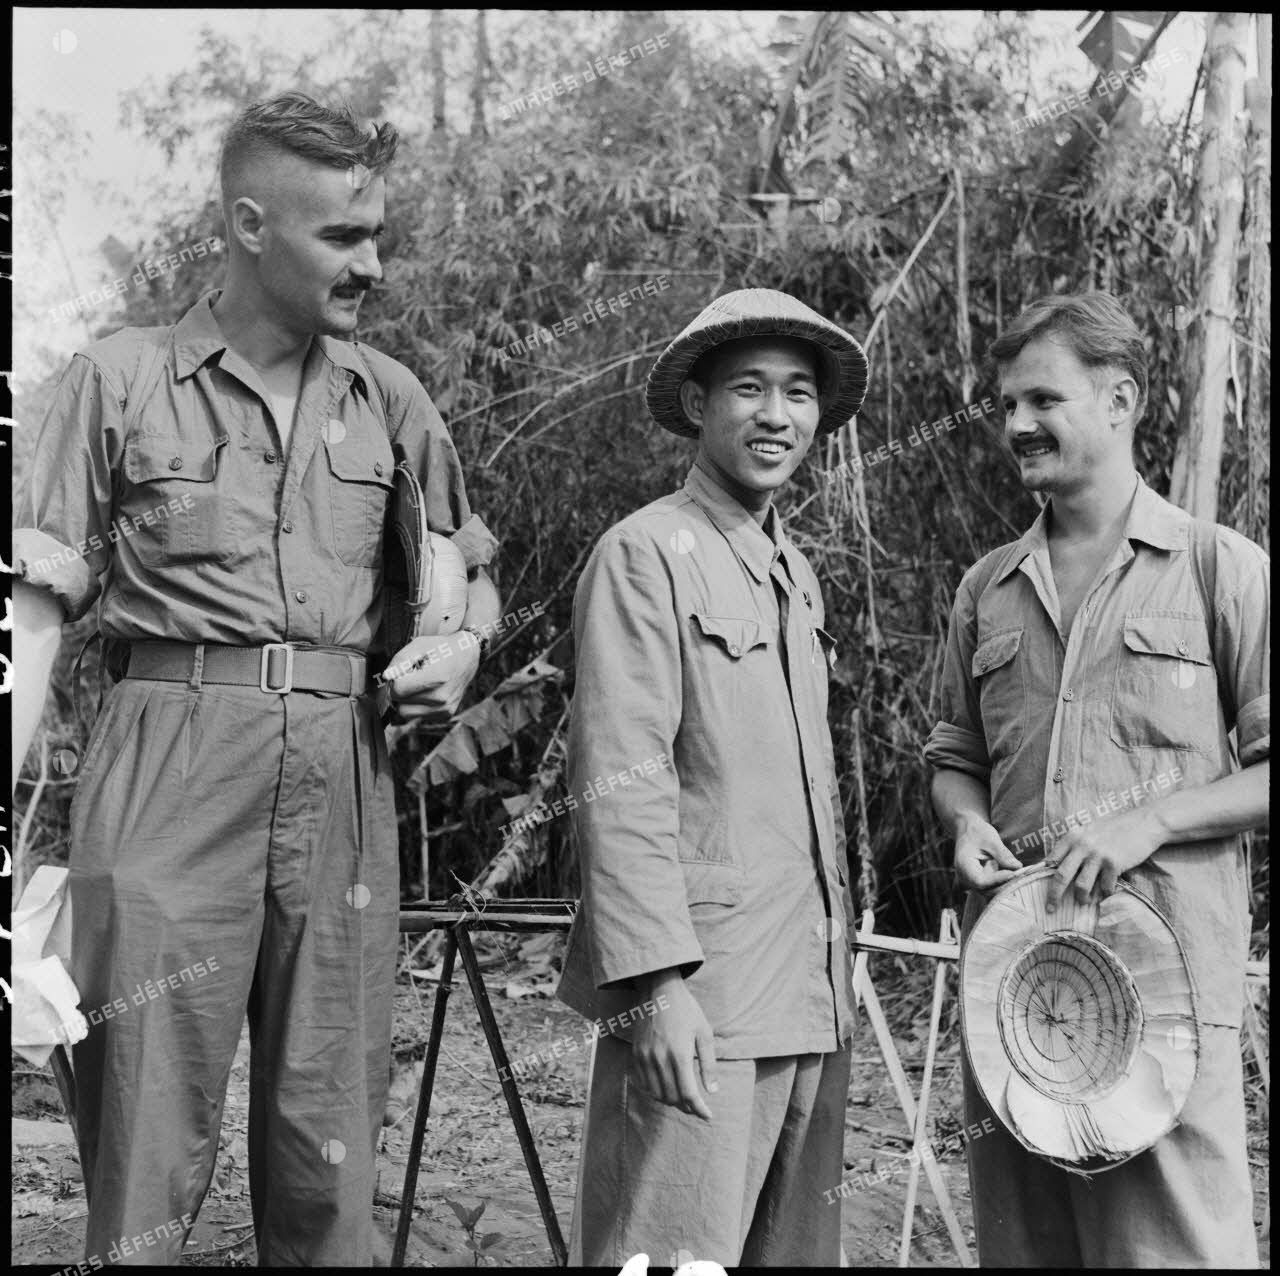 Libération à Viet Tri des reporters du SPI (Service presse information) Pierre schoendoerffer et Daniel Camus, faits prisonniers à Diên Biên Phu le 8 mai 1954. Ils sont ici en compagnie d'un reporter de l'Armée populaire vietnamienne qui les accompagnait.